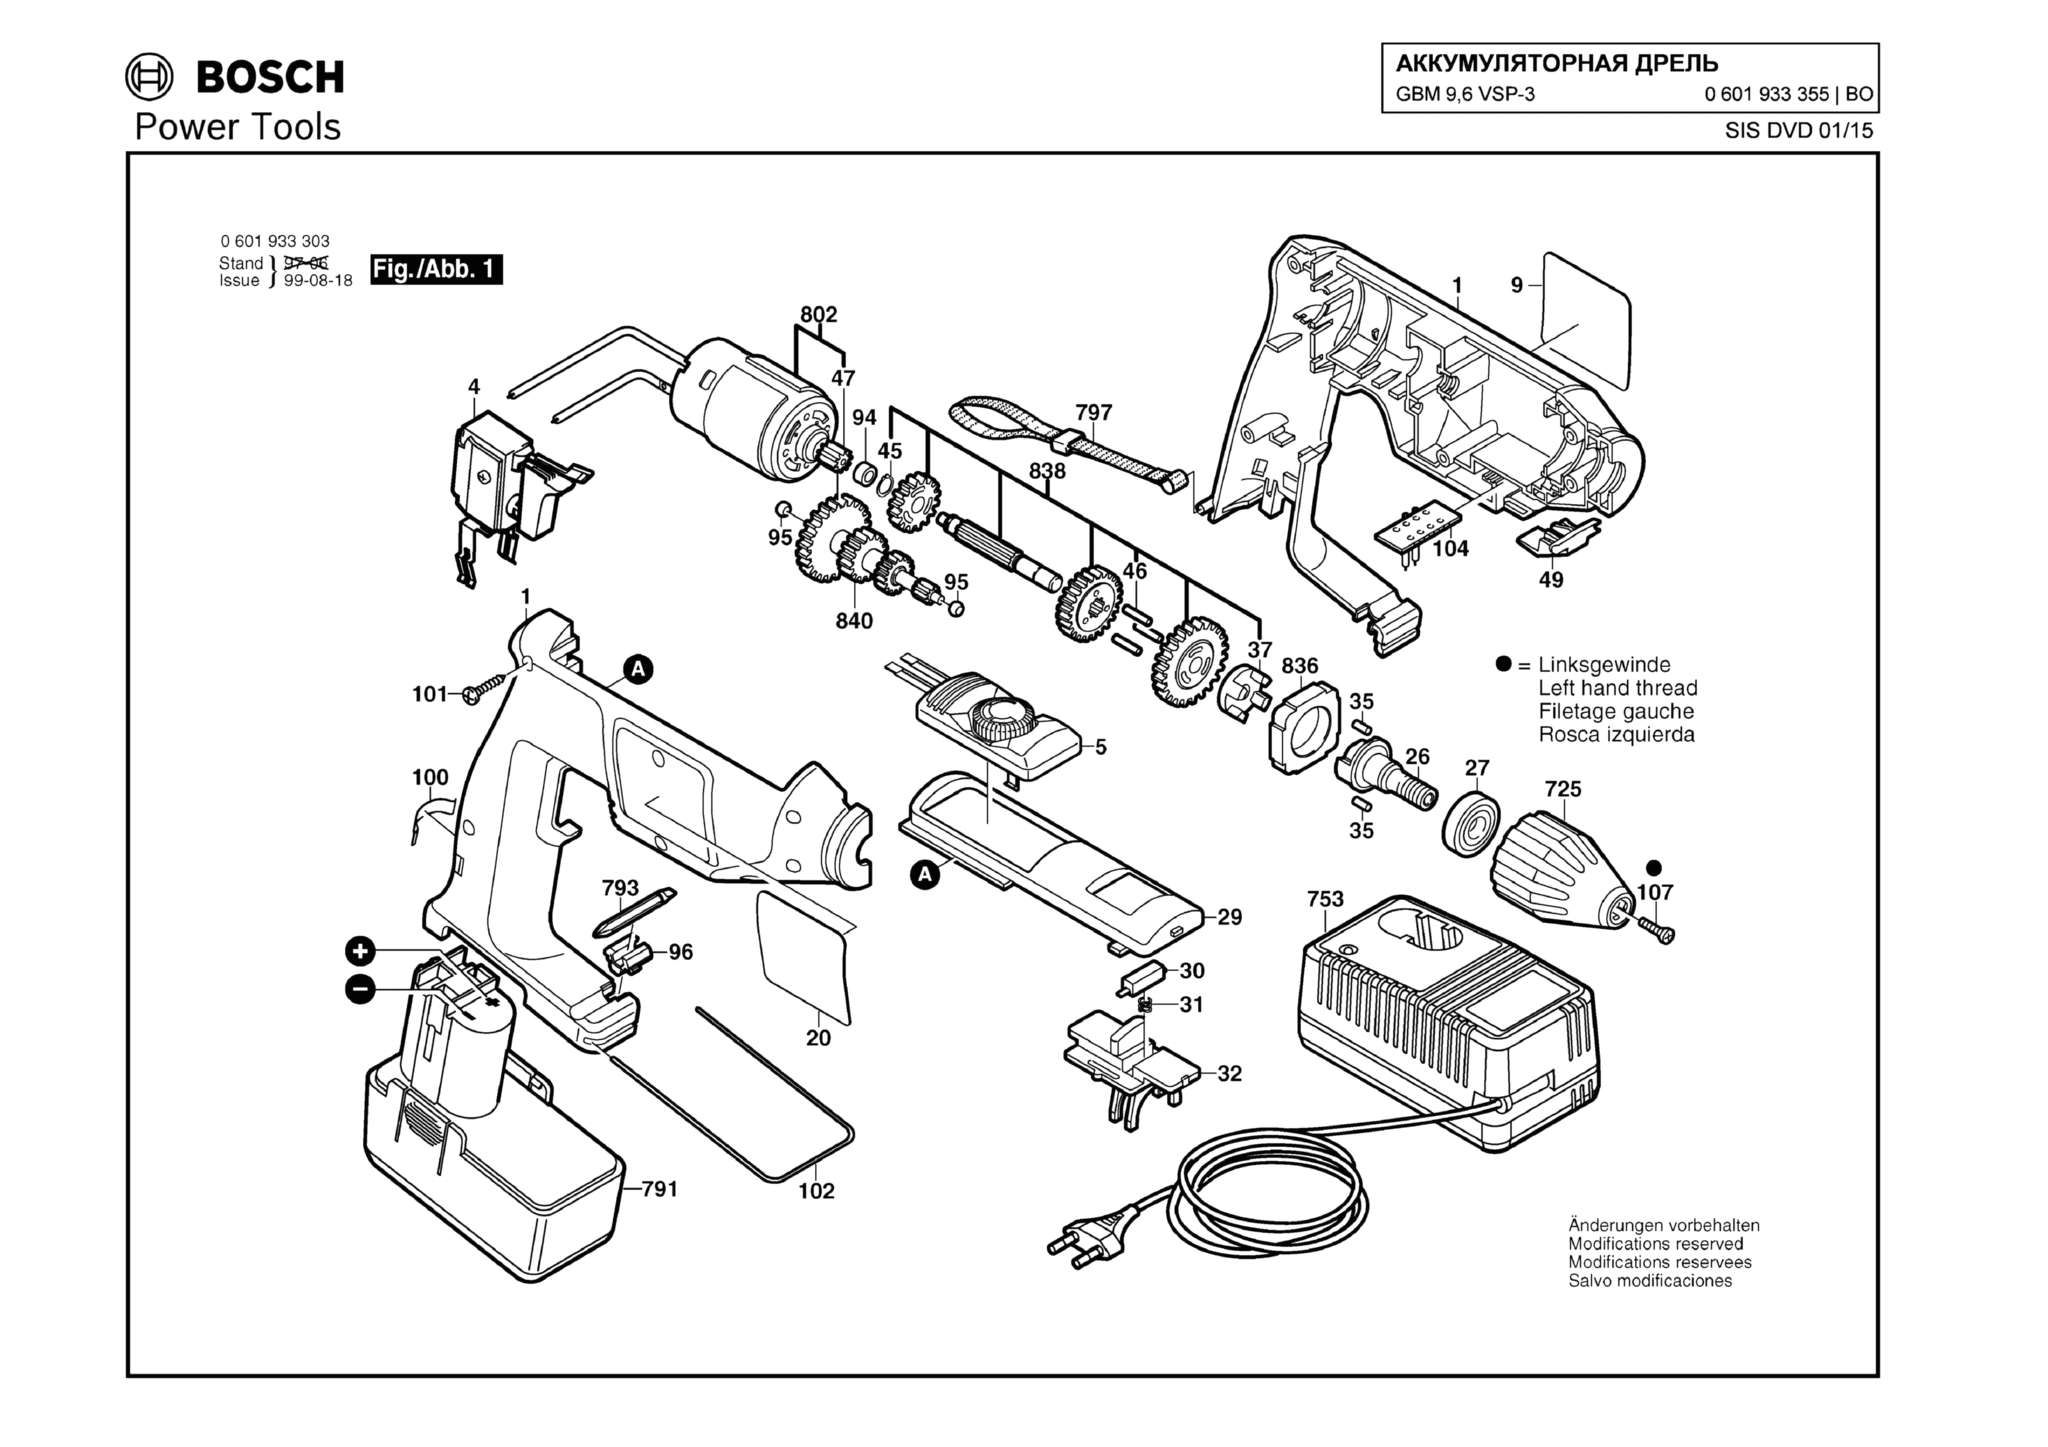 Запчасти, схема и деталировка Bosch GBM 9,6 VSP-3 (ТИП 0601933355)